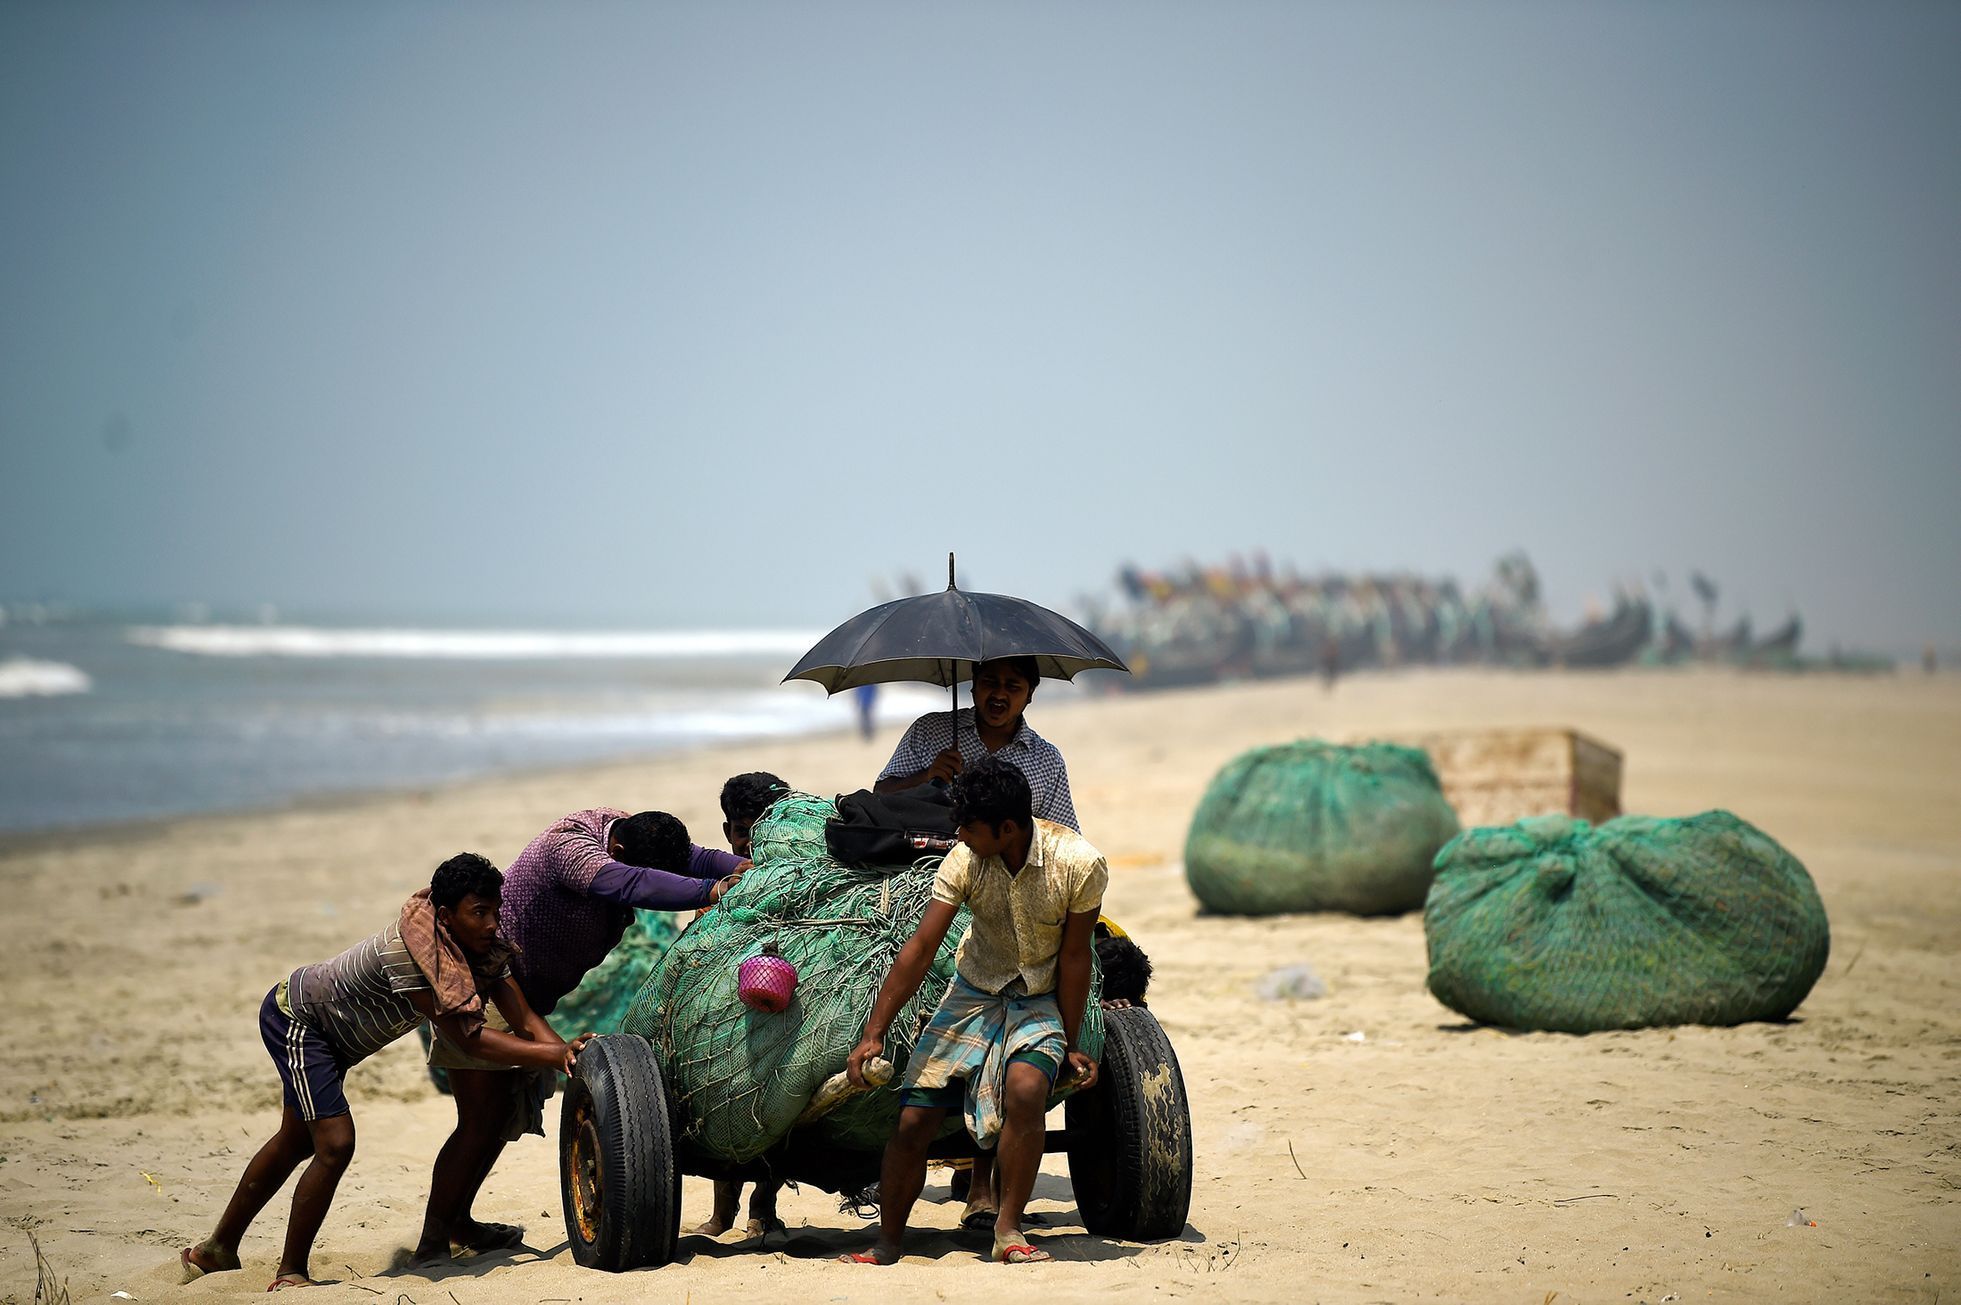 Fotogalerie / Rohingové v Bangladéši / Reuters / 4